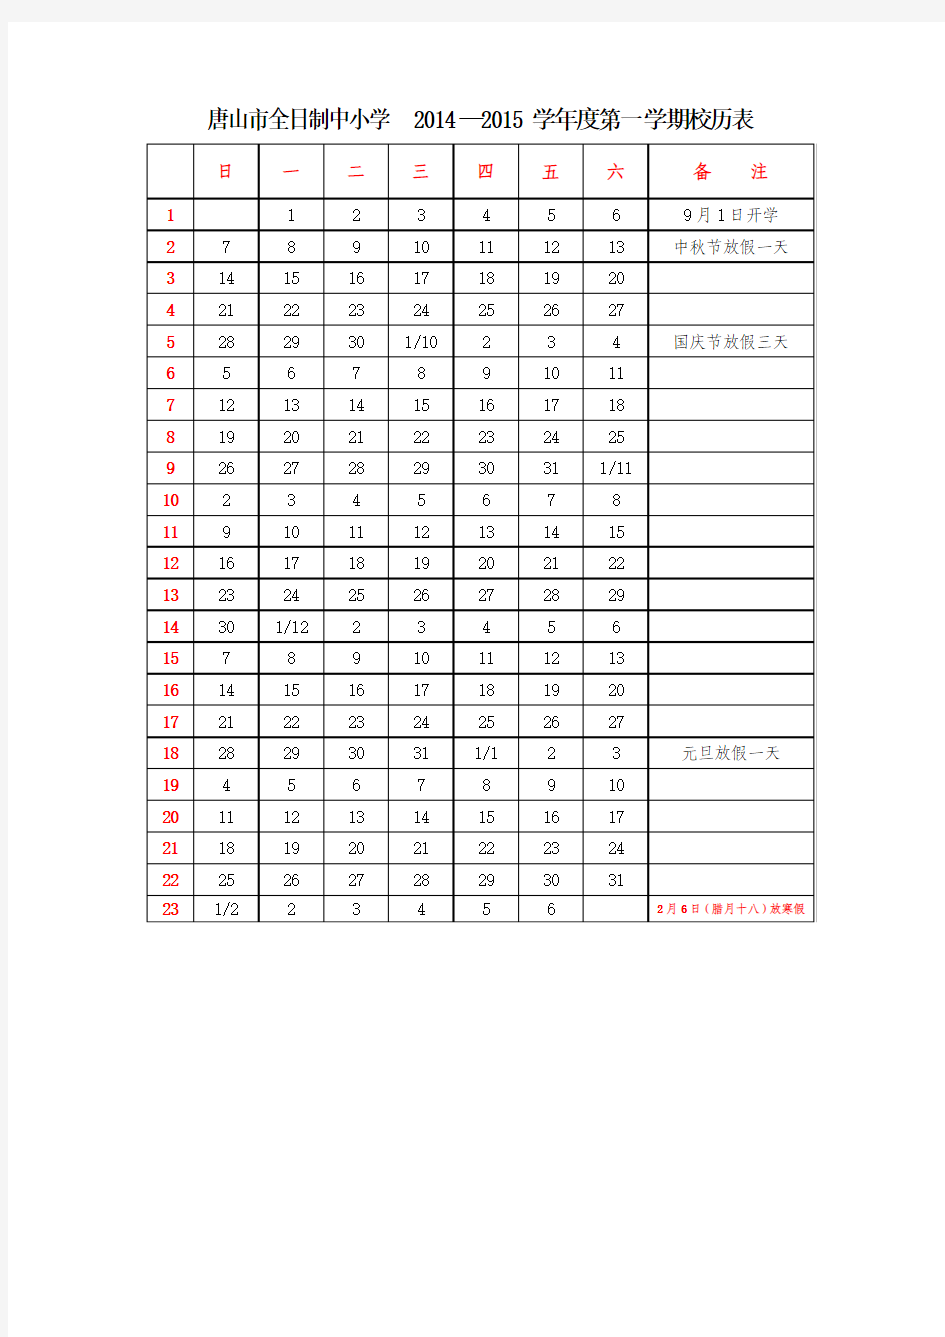 唐山市全日制中小学2014—2015学年度第一学期校历表